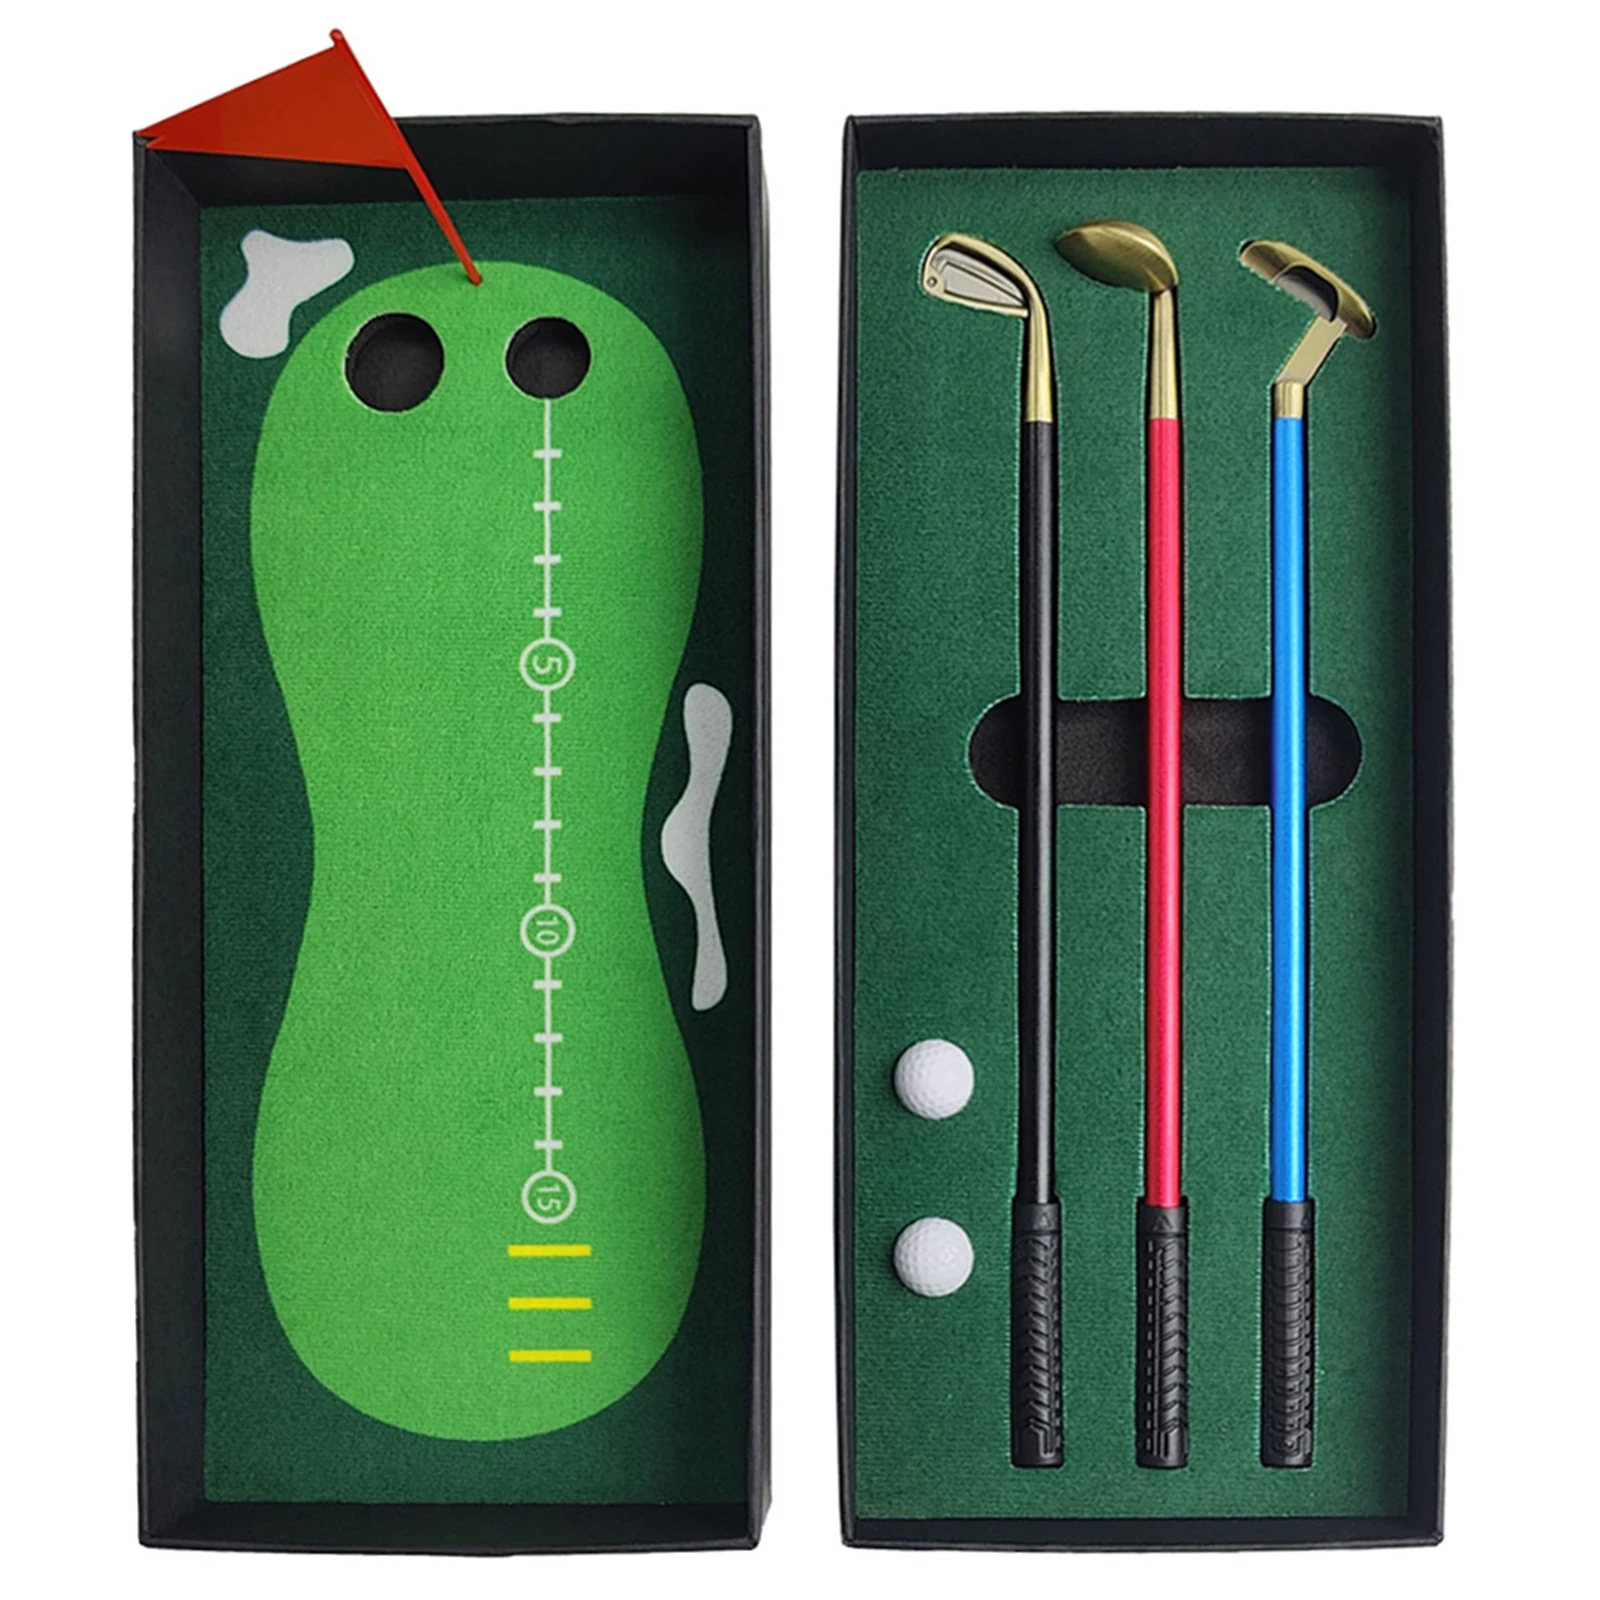 

Ручки для гольфа-забавный и забавный настольный аксессуар, подарок для любителей игры в гольф и письма включают в себя ручки и миниатюрные курсы